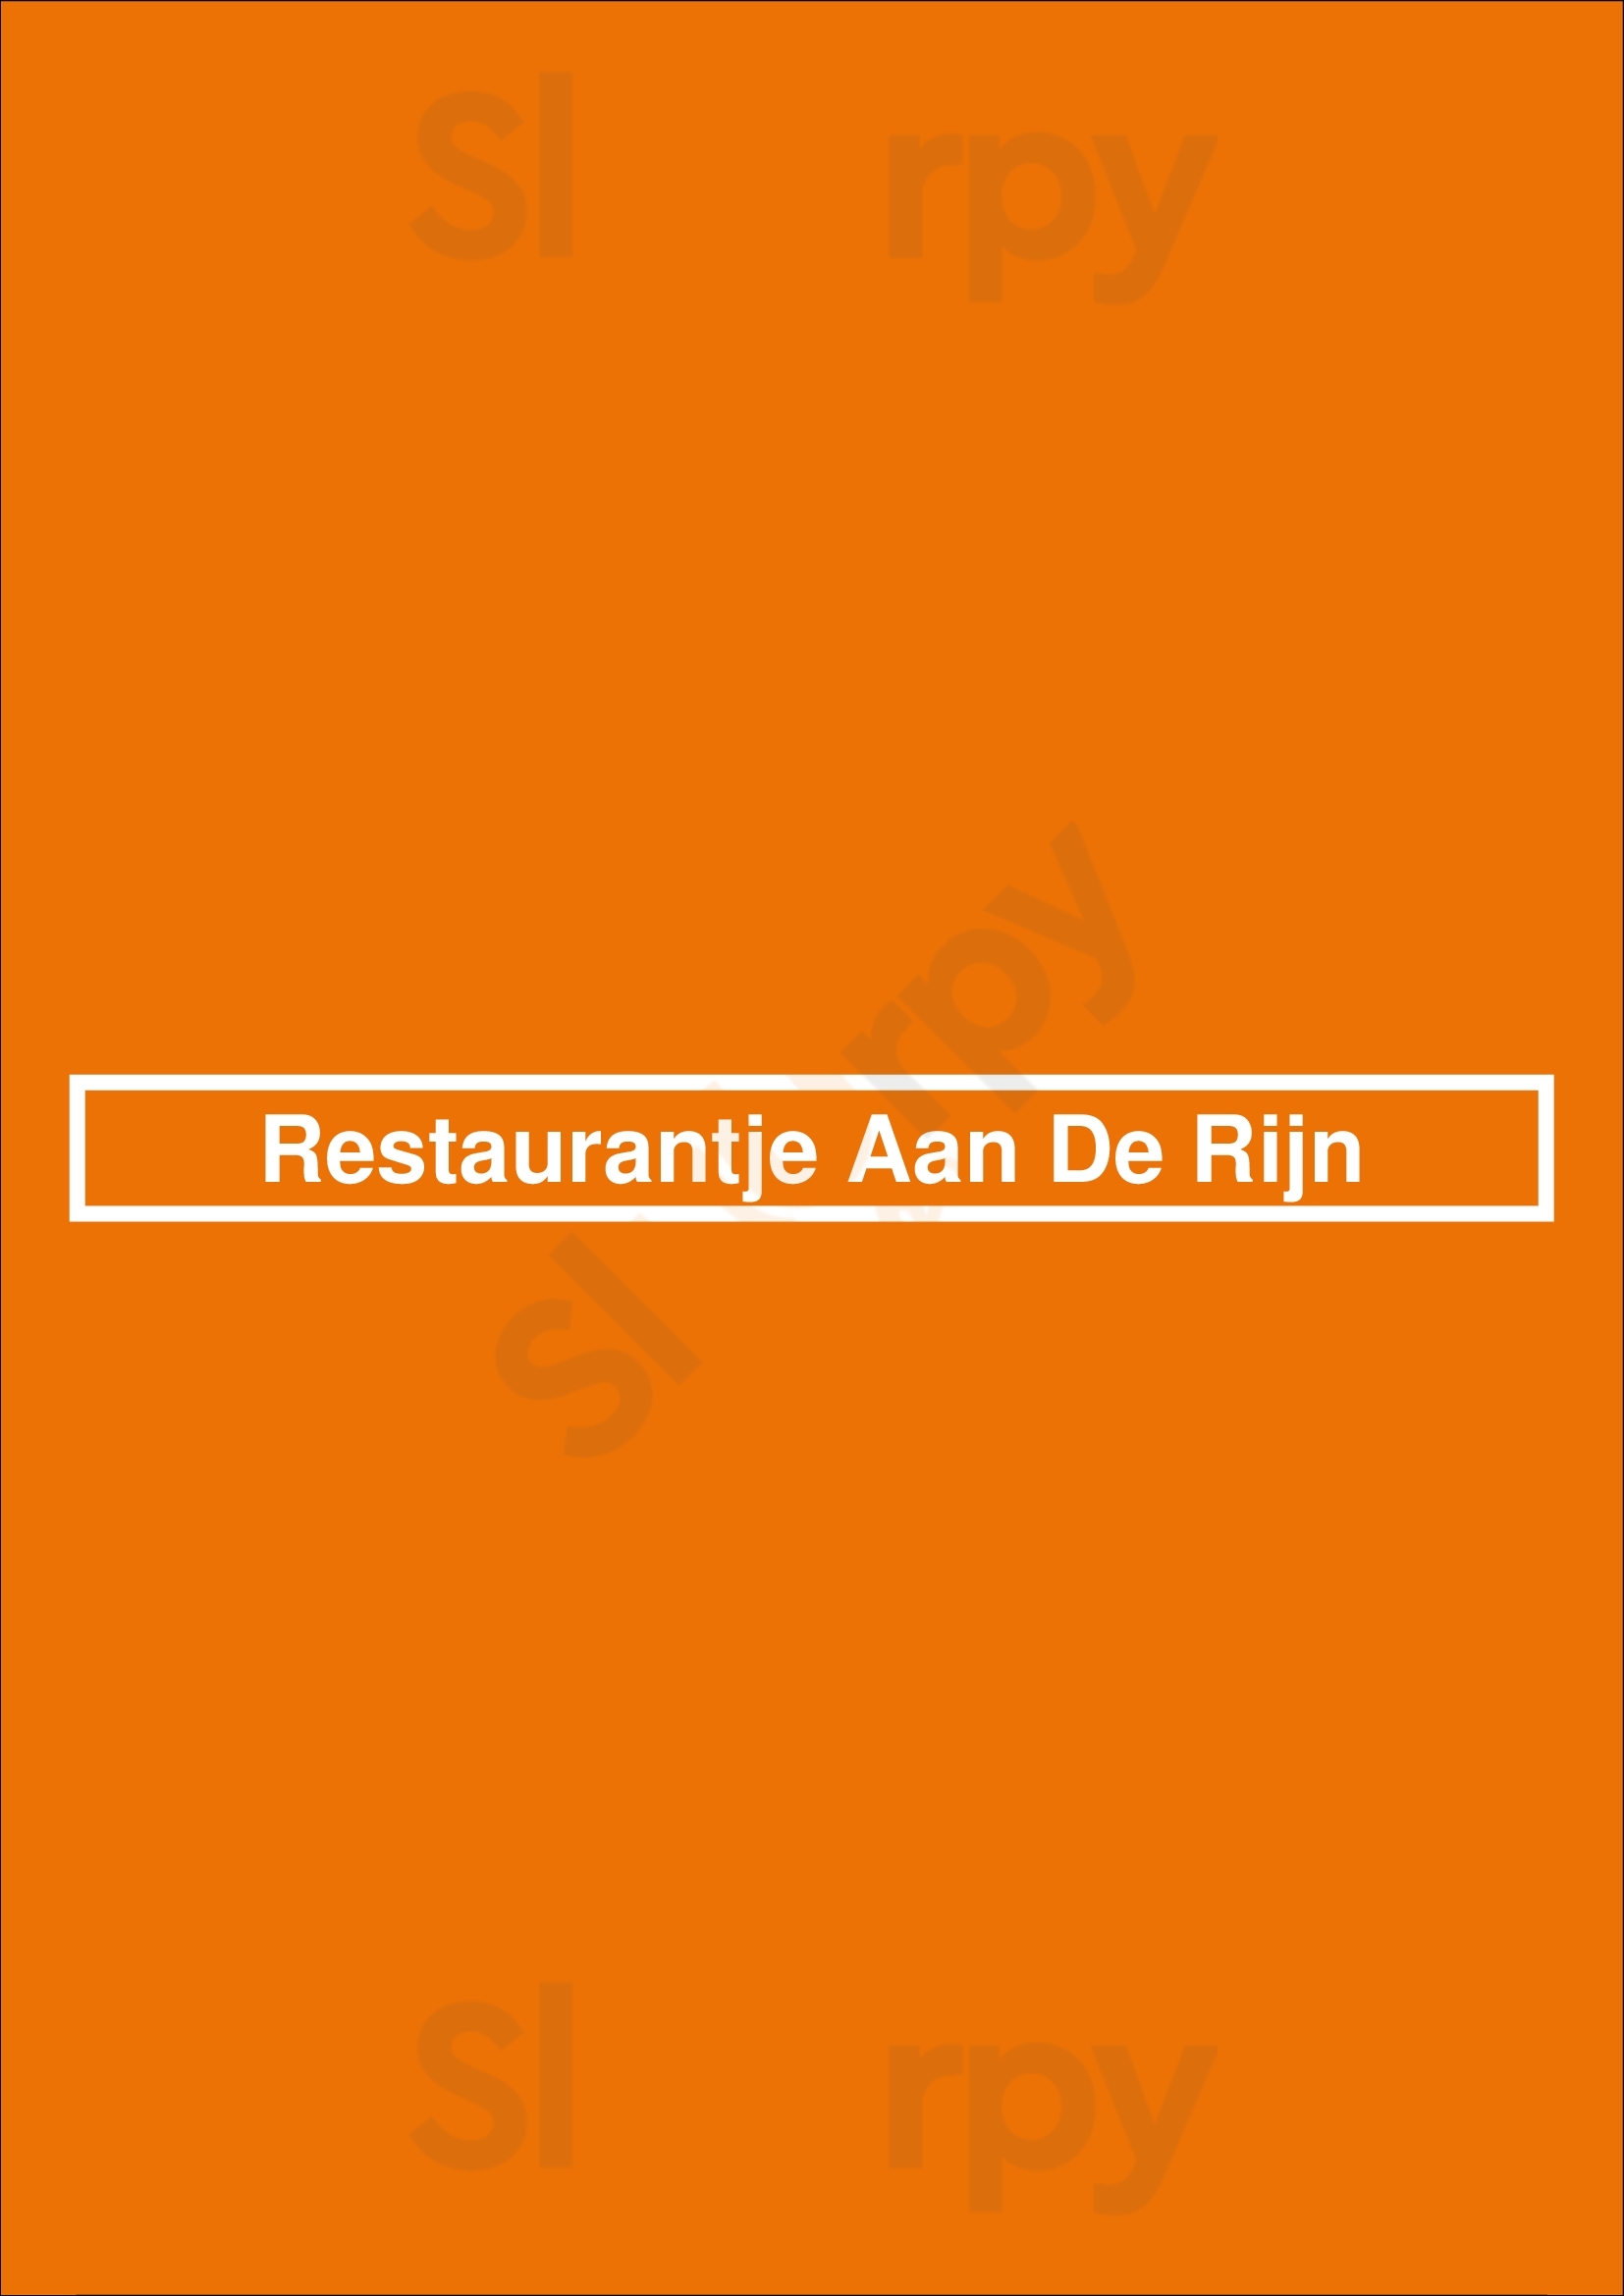 Restaurantje Aan De Rijn Bodegraven Menu - 1